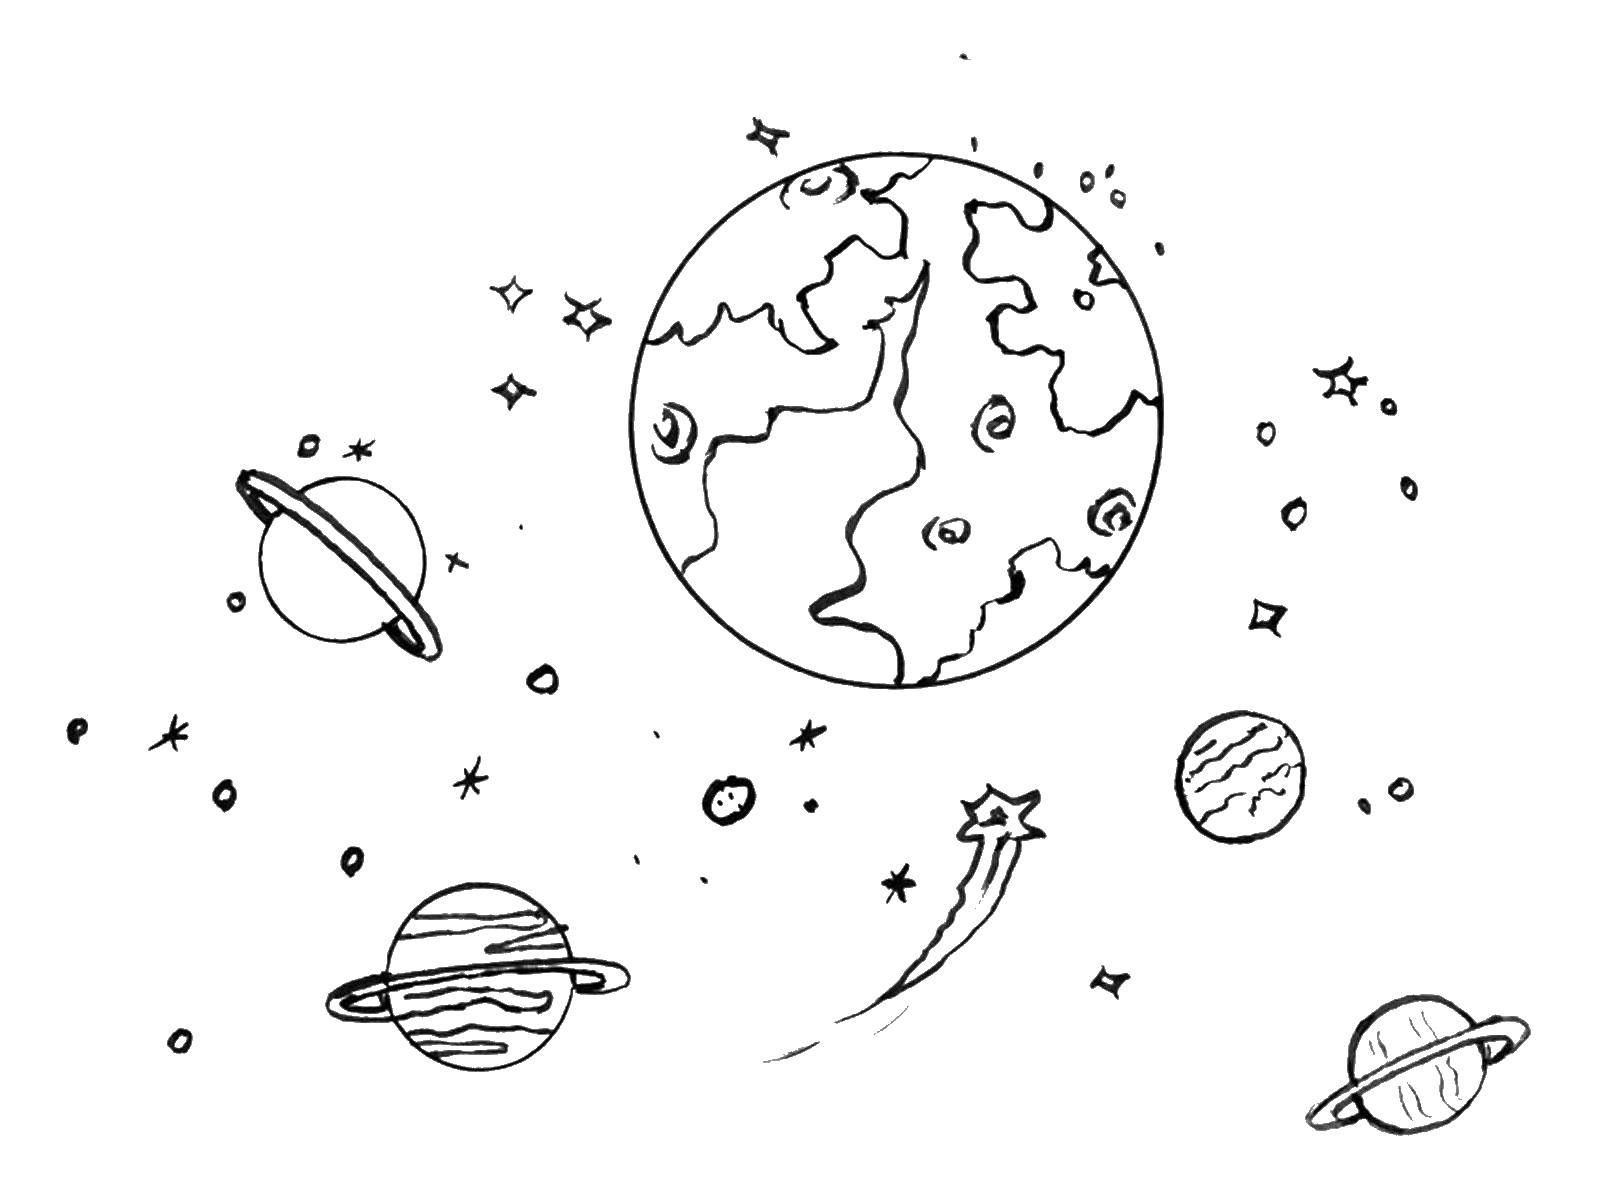 Розмальовки  Космічний пейзаж. Завантажити розмальовку - Космос, планета, Всесвіт, Галактика.  Роздрукувати ,Космічні розмальовки,